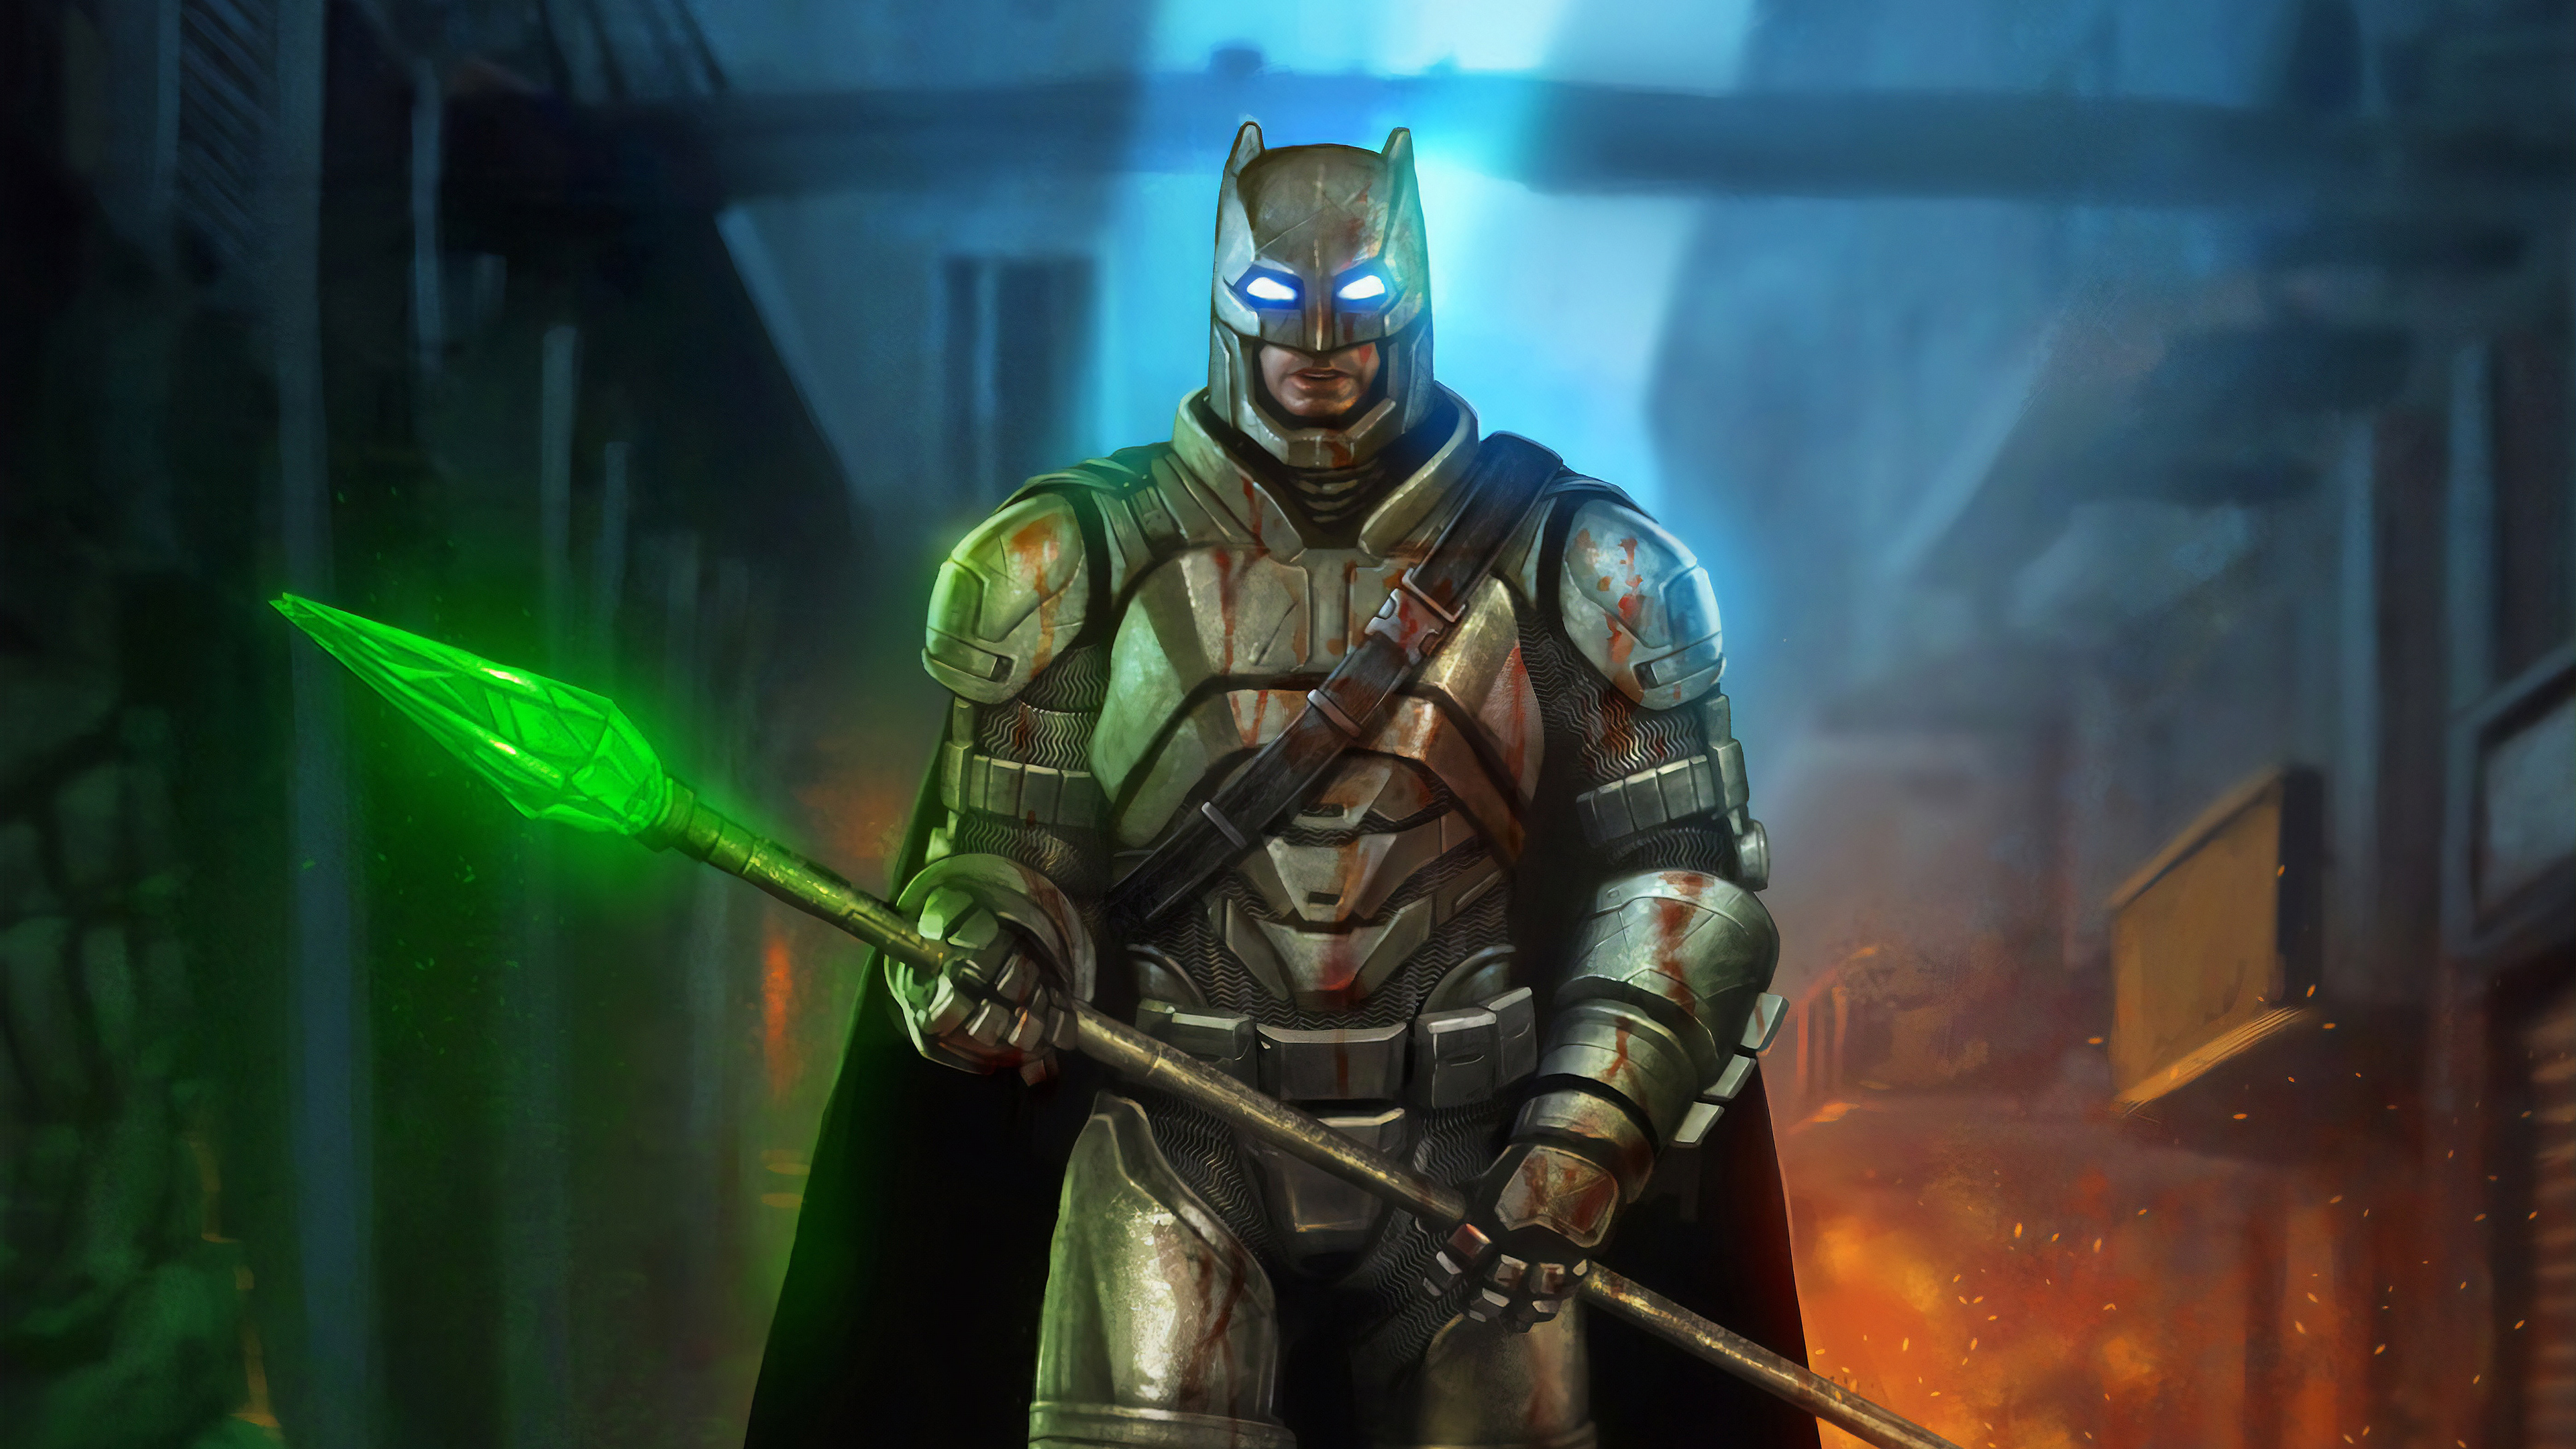 batman with krypton sword 1562104679 - Batman With Krypton Sword - superheroes wallpapers, hd-wallpapers, digital art wallpapers, behance wallpapers, batman wallpapers, artwork wallpapers, 4k-wallpapers